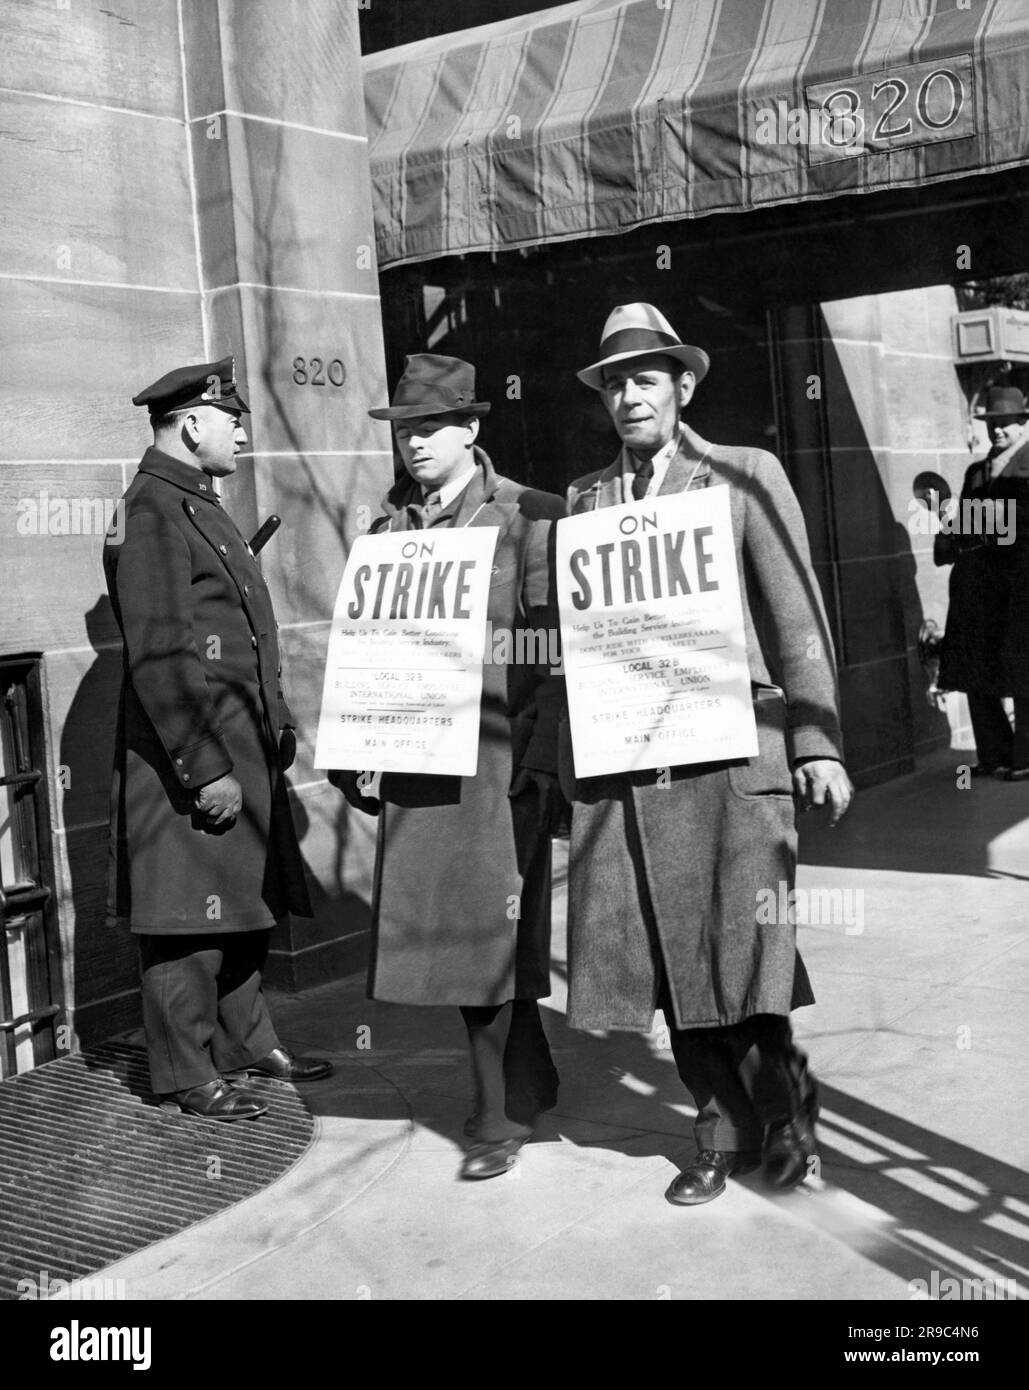 New York, New York : c. 1938 employés de service International les membres de l'UNON picket devant la résidence du gouverneur Lehman, sur Park Ave Banque D'Images